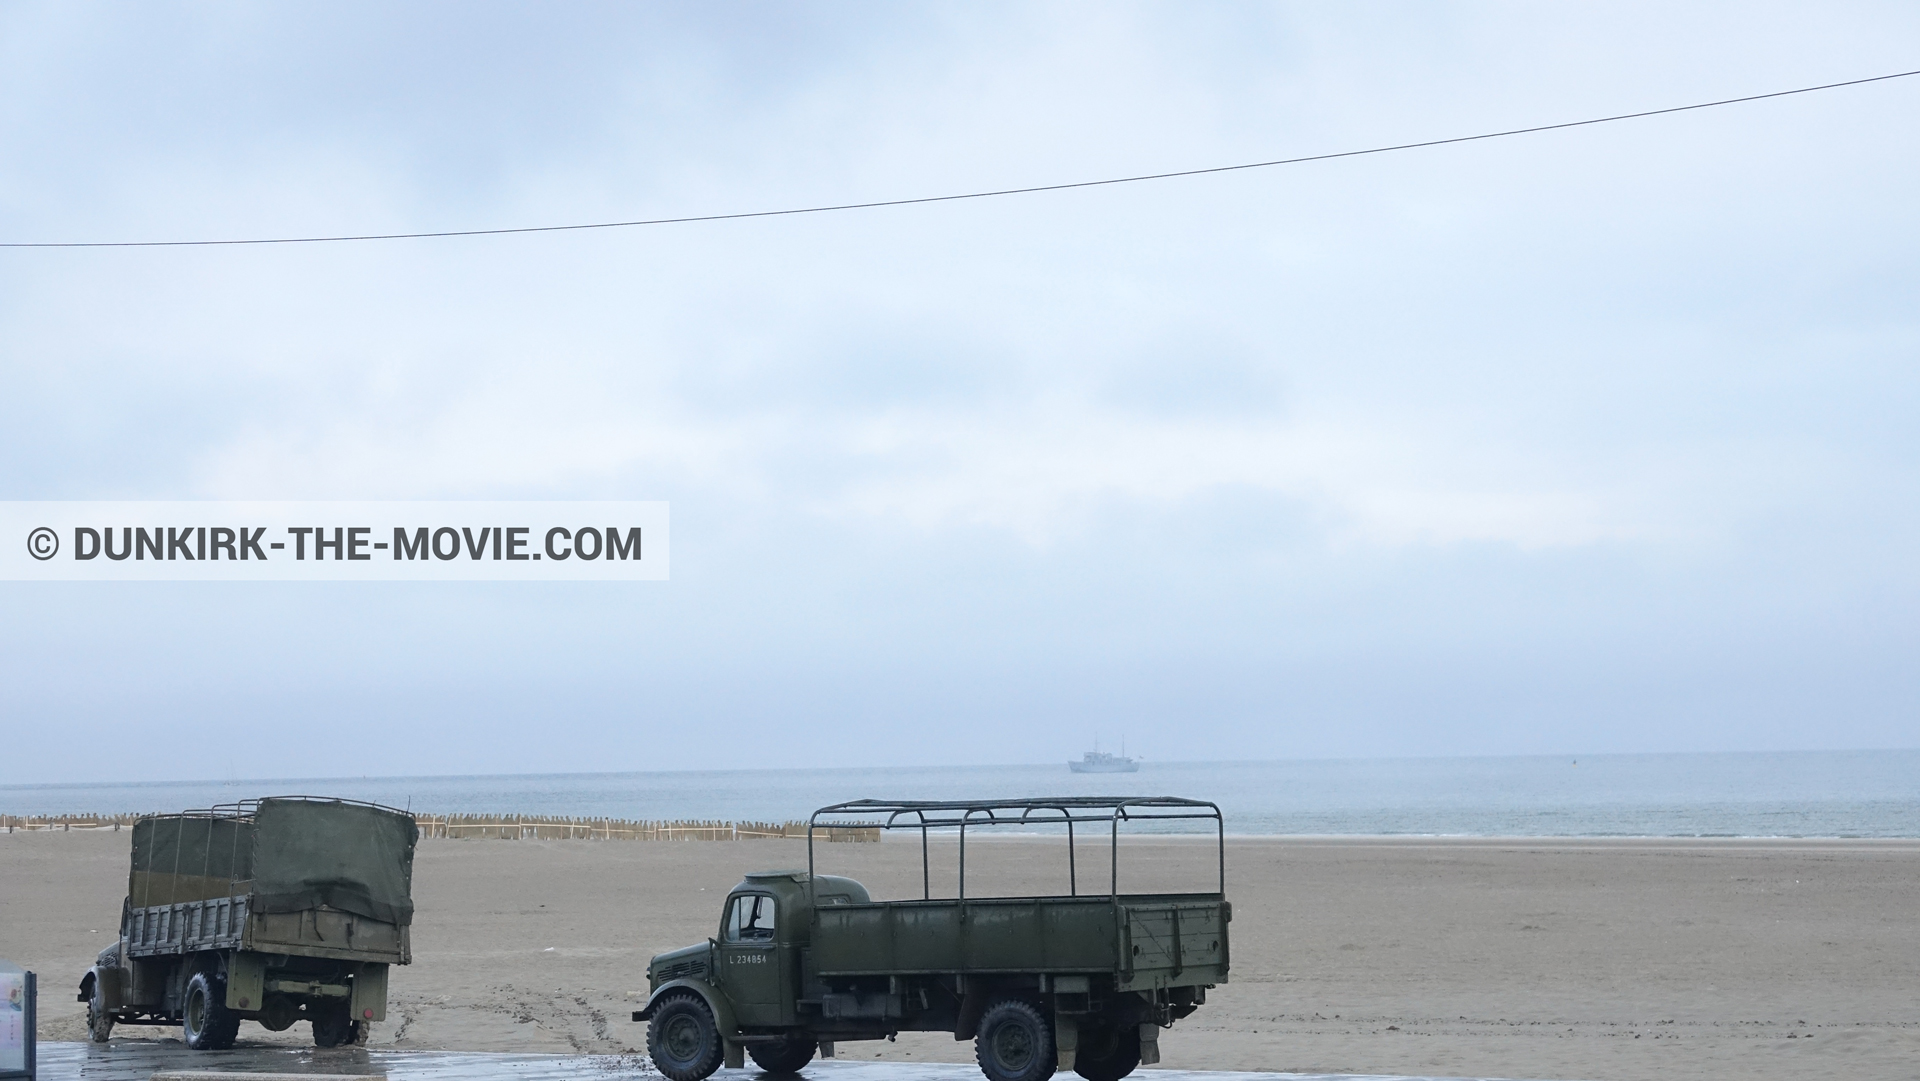 Fotos con camion, cielo nublado, playa,  durante el rodaje de la película Dunkerque de Nolan